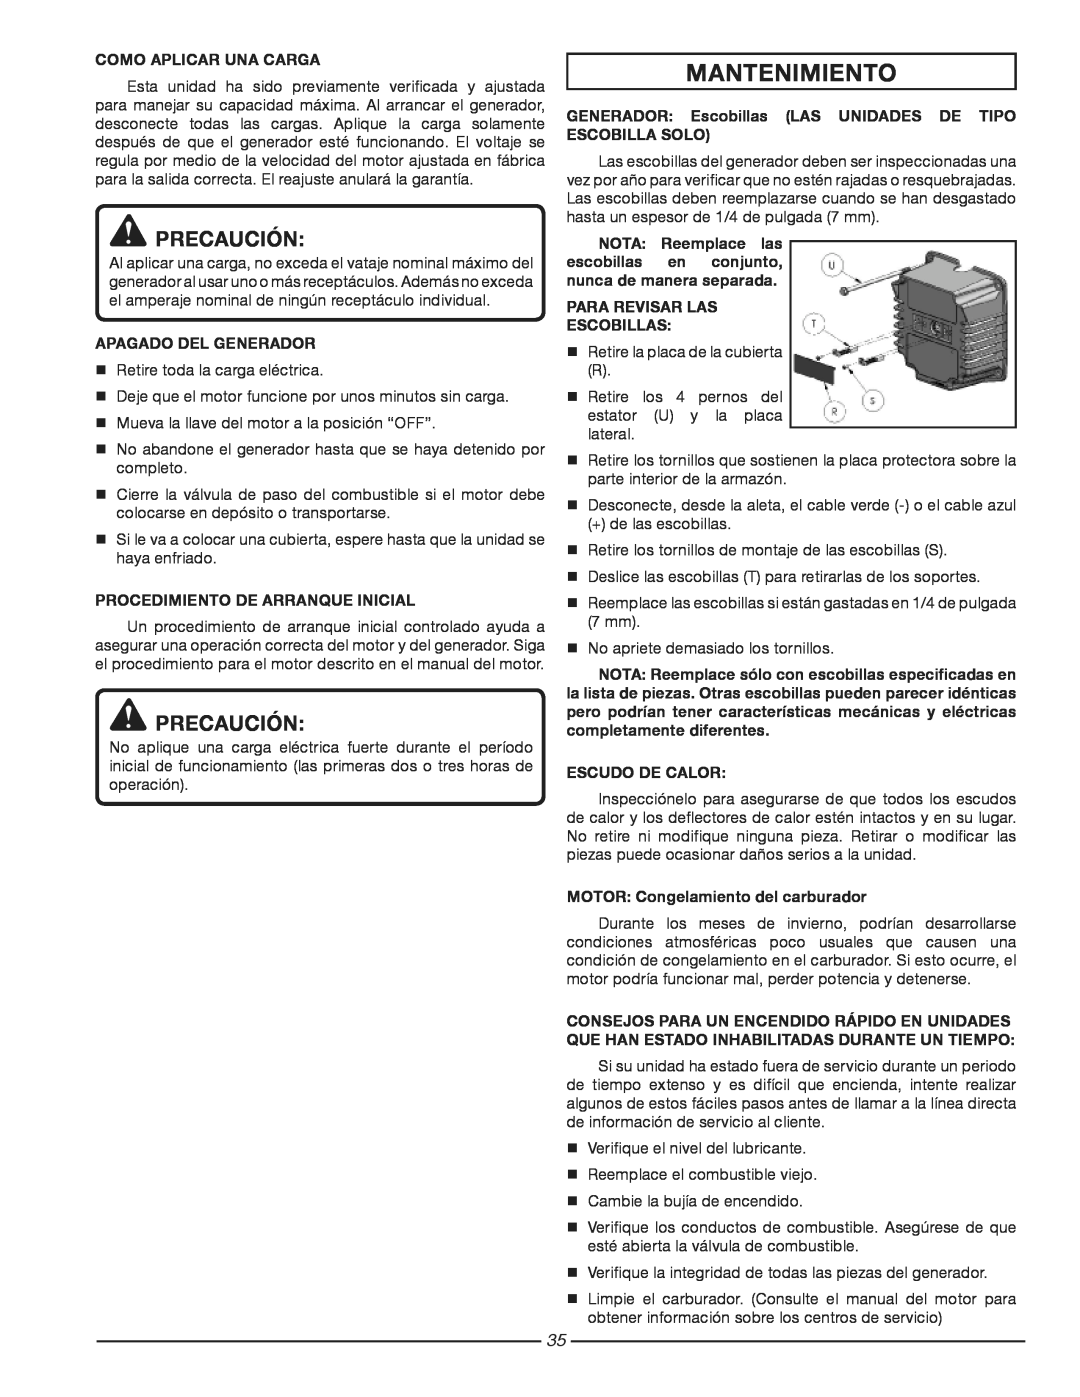 Homelite HG3510 Mantenimiento, Precaución, Como Aplicar Una Carga, Apagado Del Generador, Para Revisar Las ­Escobillas 